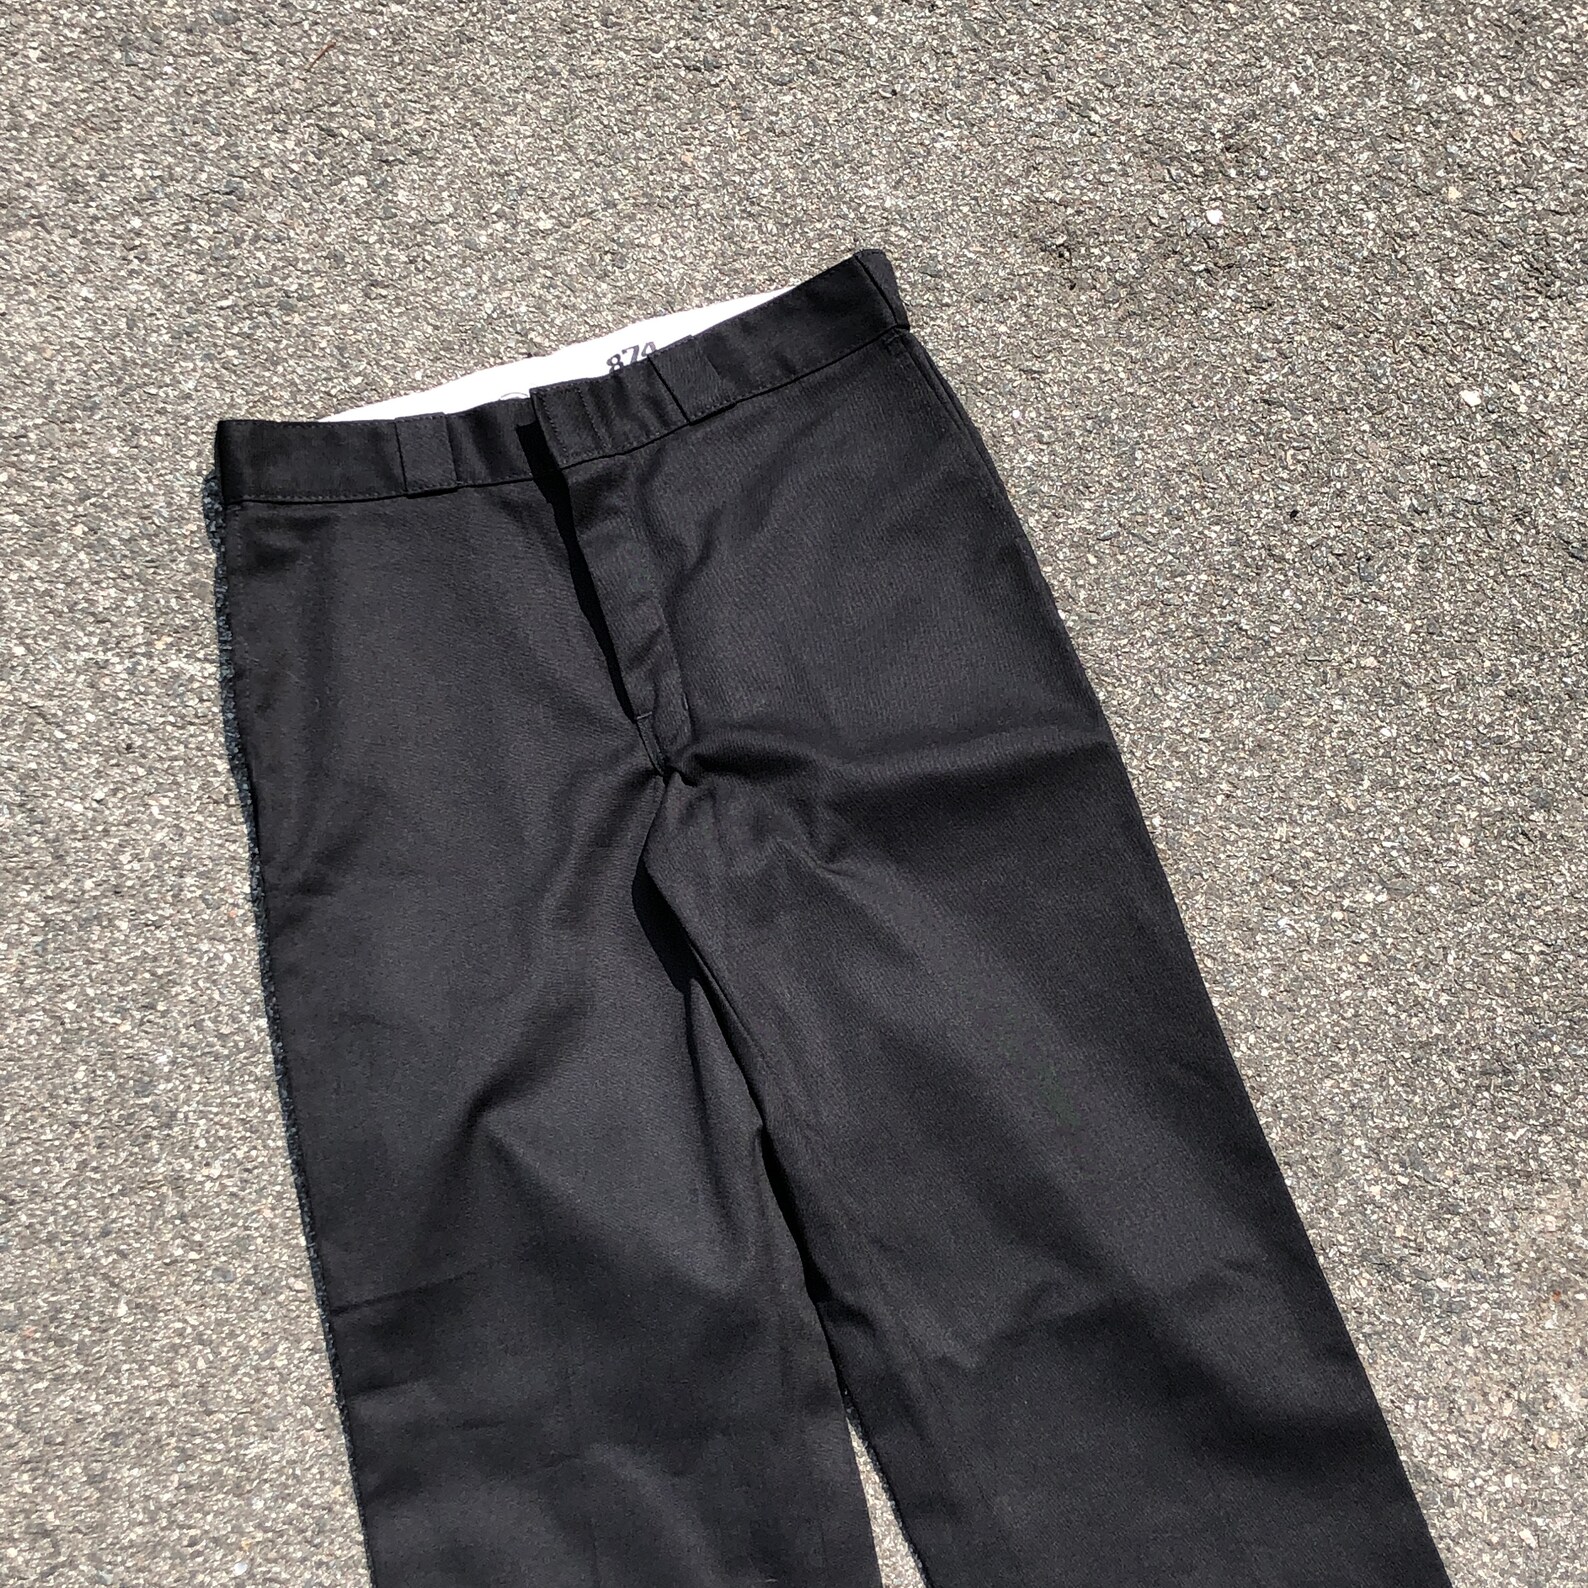 This is Vintage Dickies 874 Black Work Pants 32x32 Carhartt | Etsy